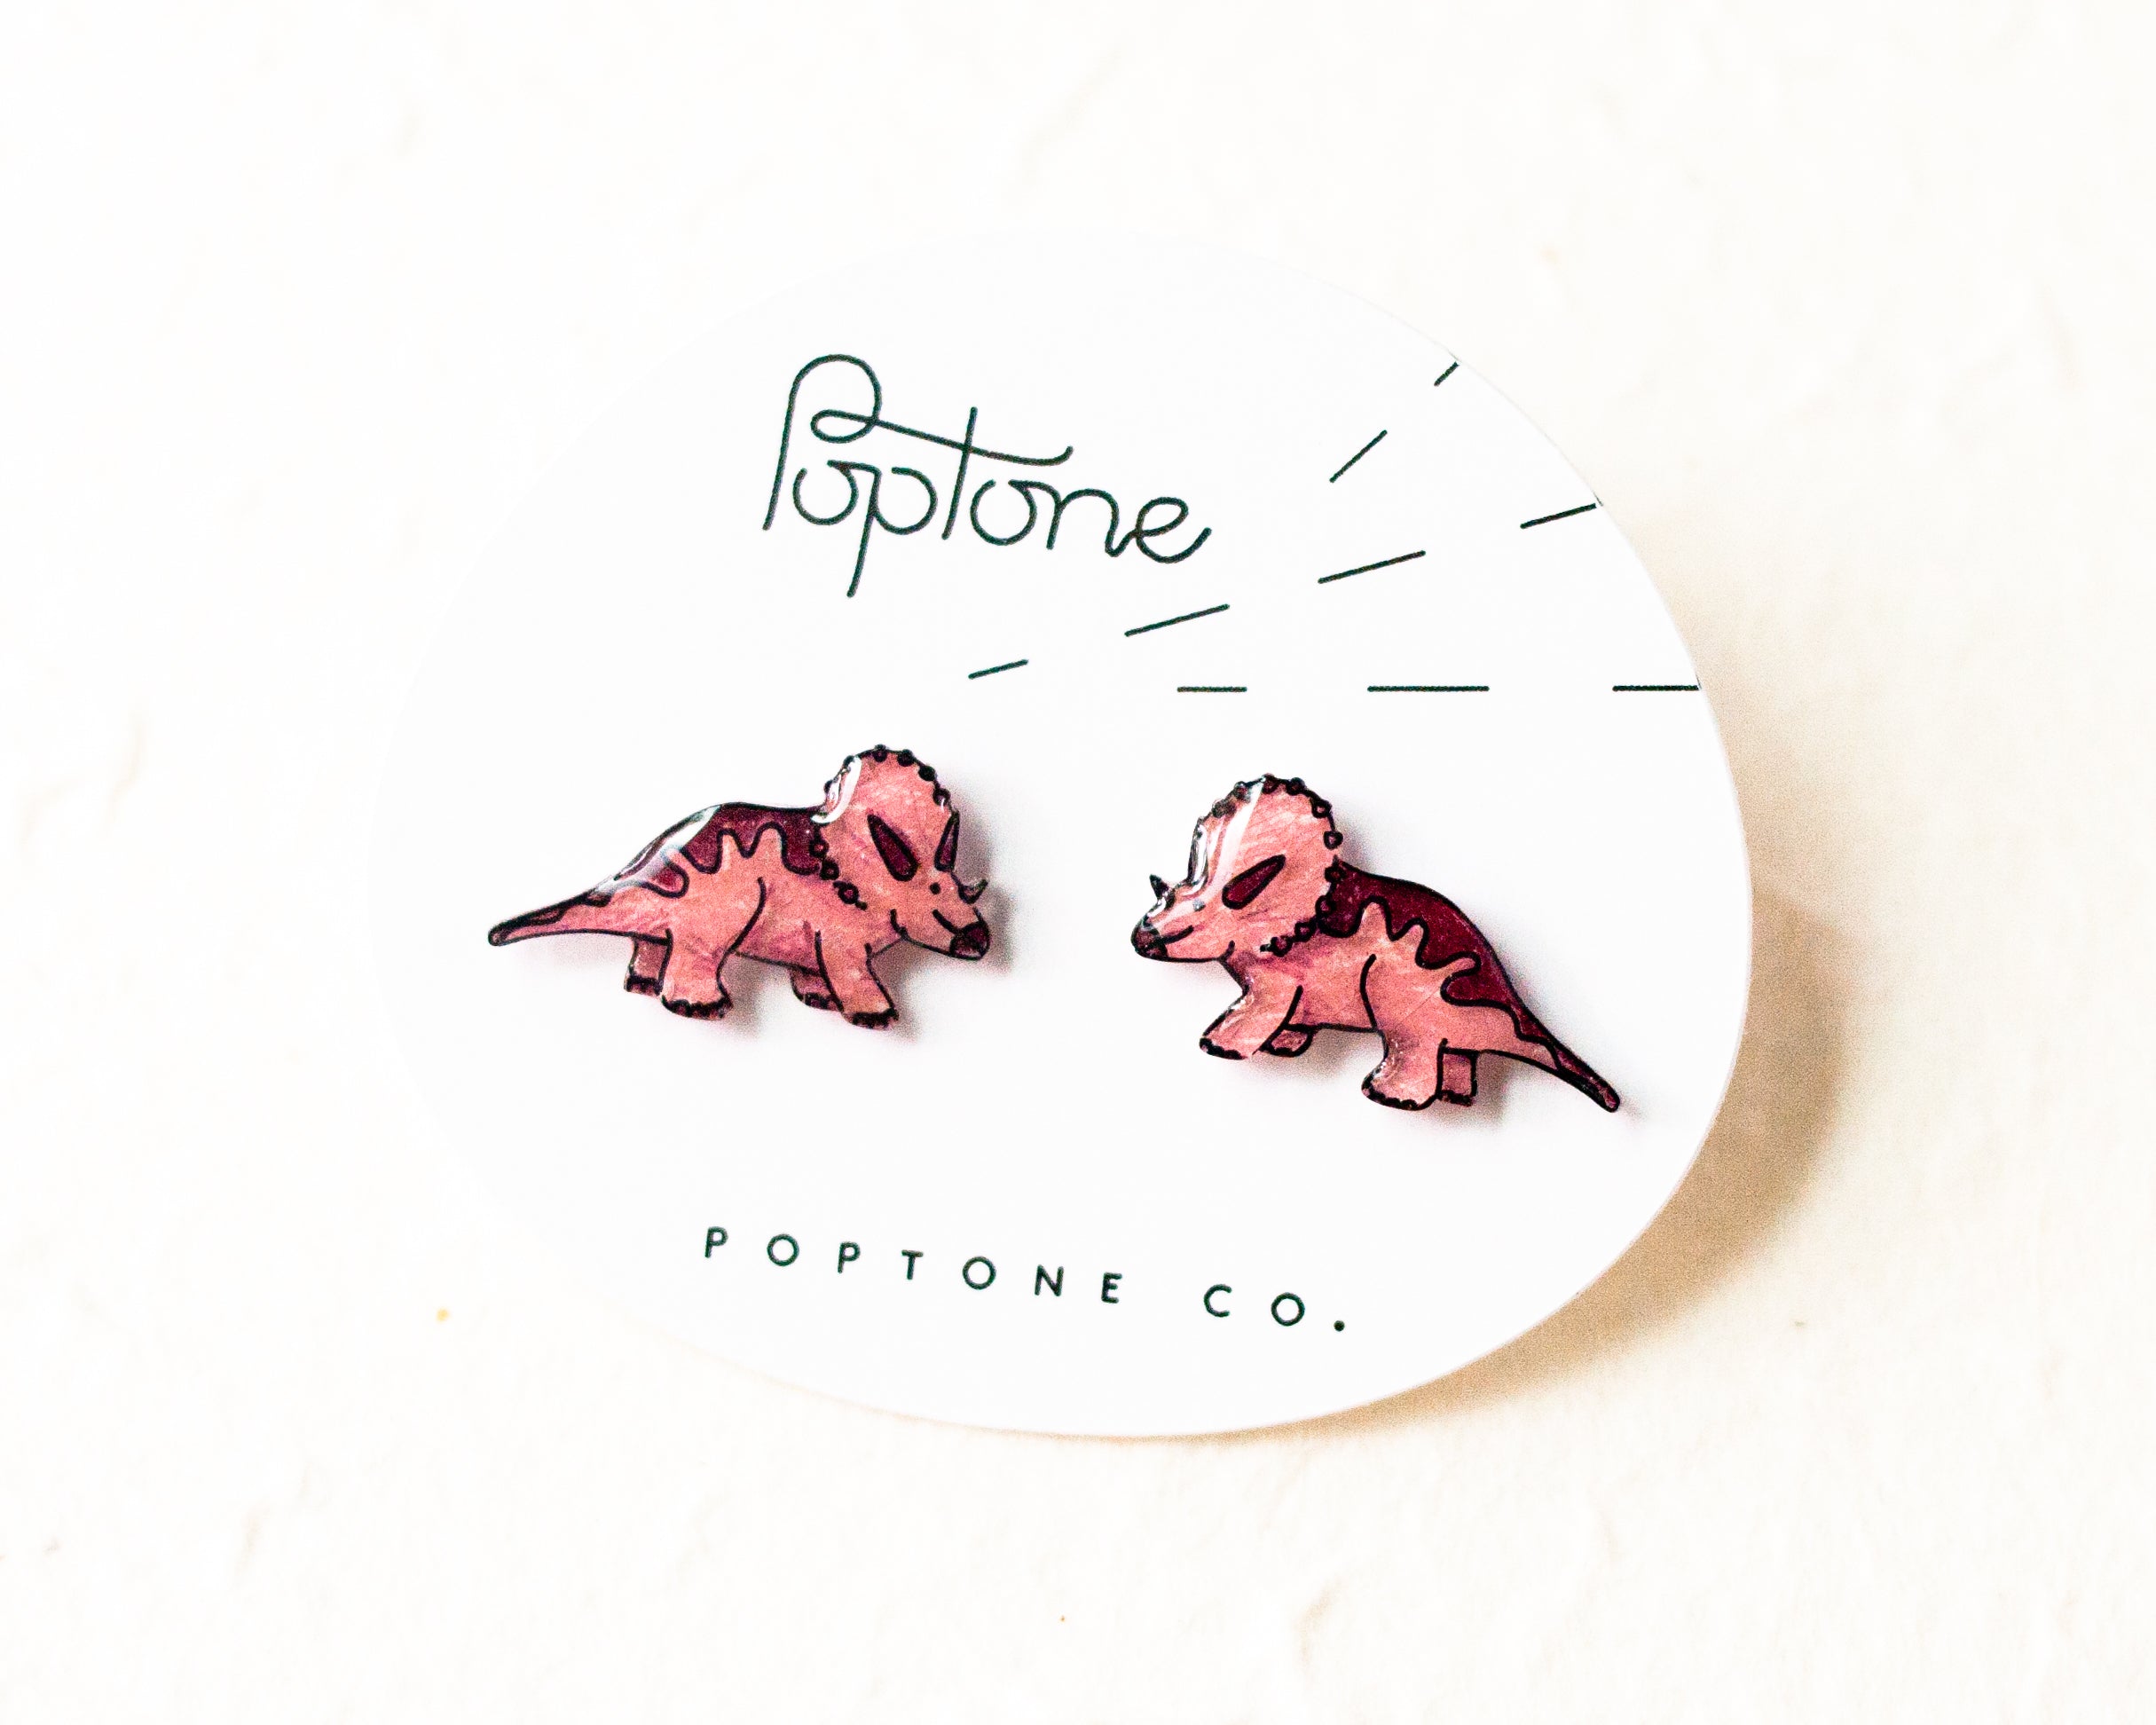 Pink Triceratops Dinosaur Stud Earrings